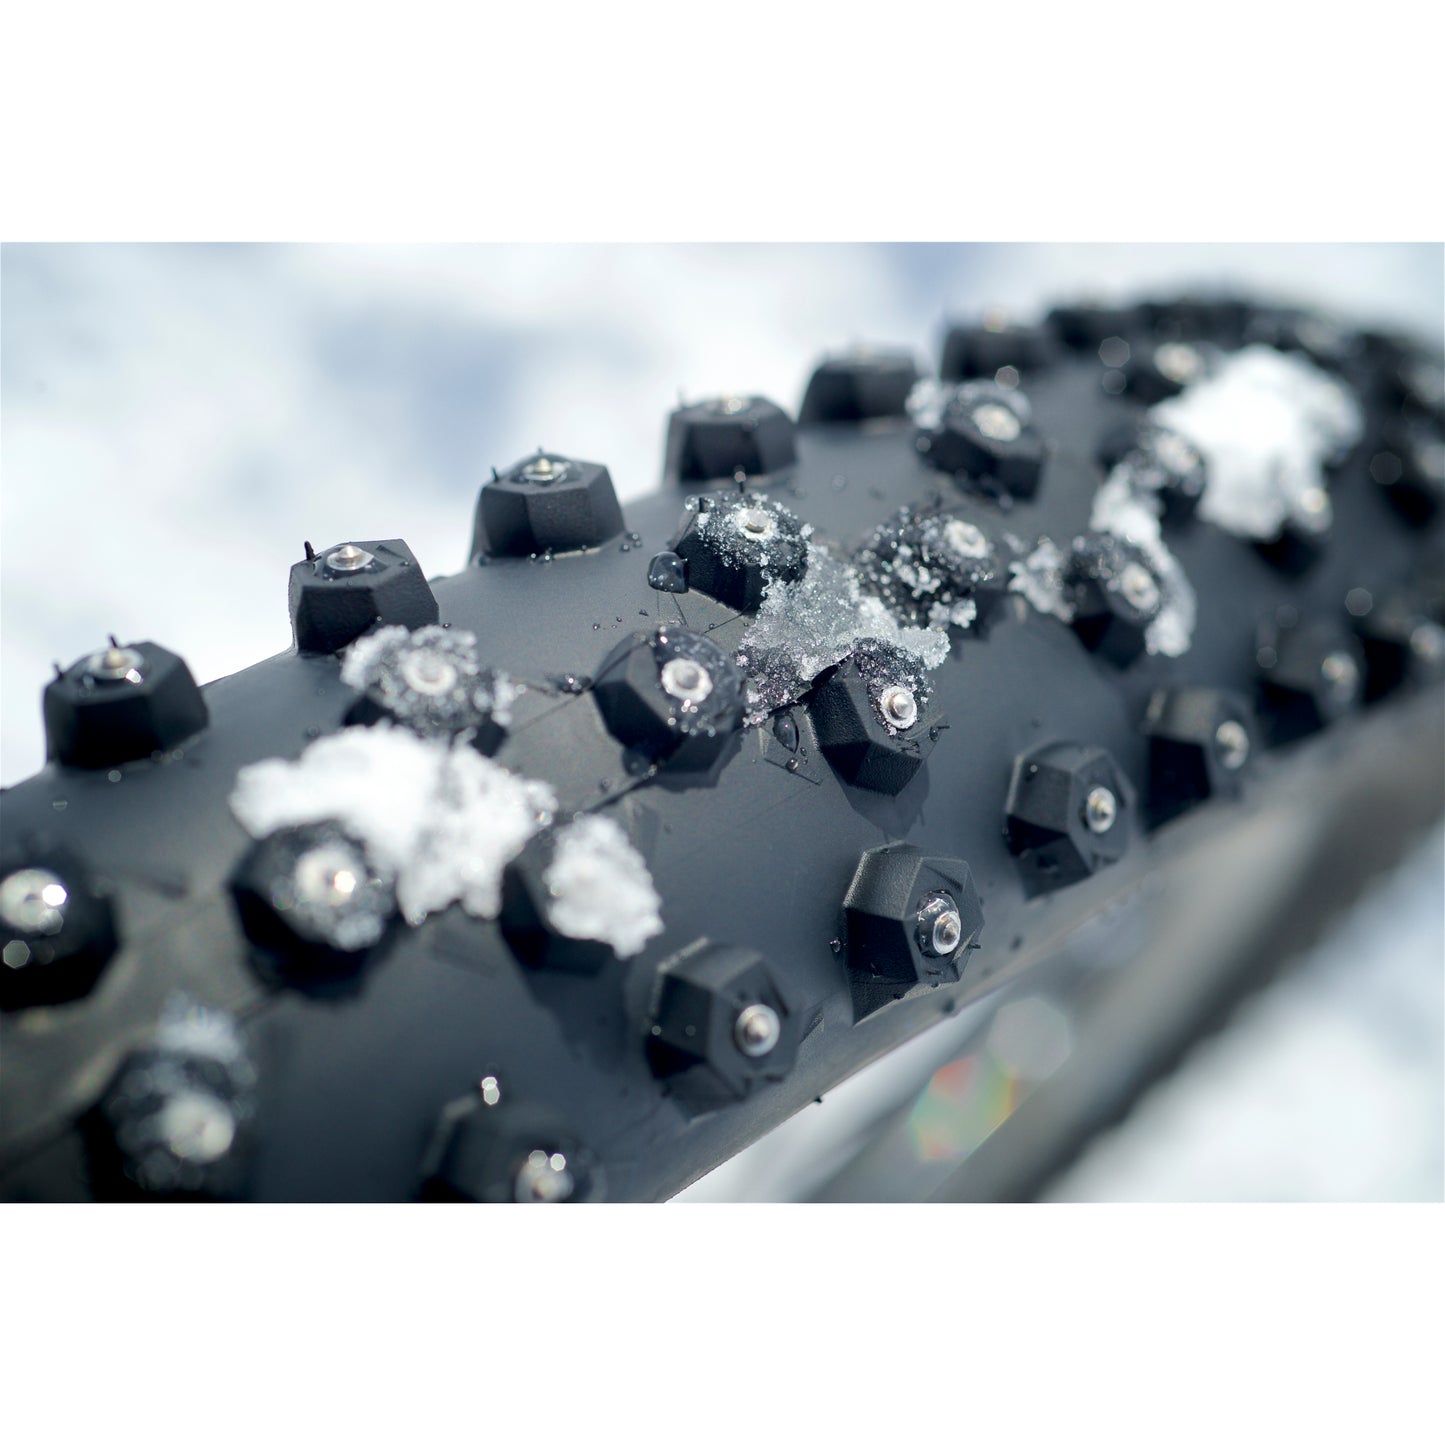 Покрышка Schwalbe Ice Spiker Pro с проволочным бортом — производительность | Зима | RaceGuard — 29x2,60 дюйма | Черный 